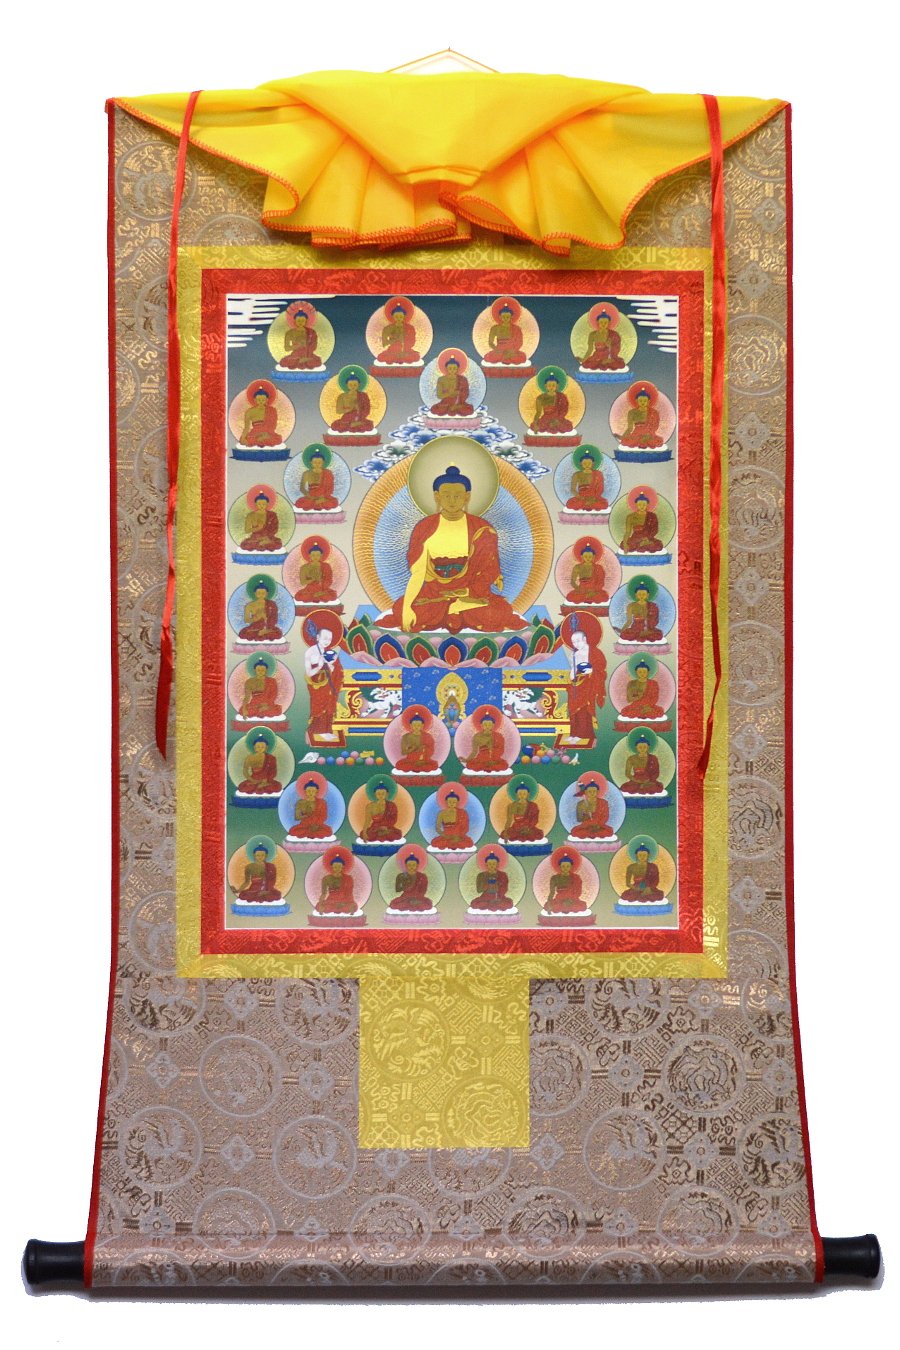 Тханка 35 Будд Покаяния (печатная, 51 х 83 см), 51 х 83 см, изображение: 32 х 45 см